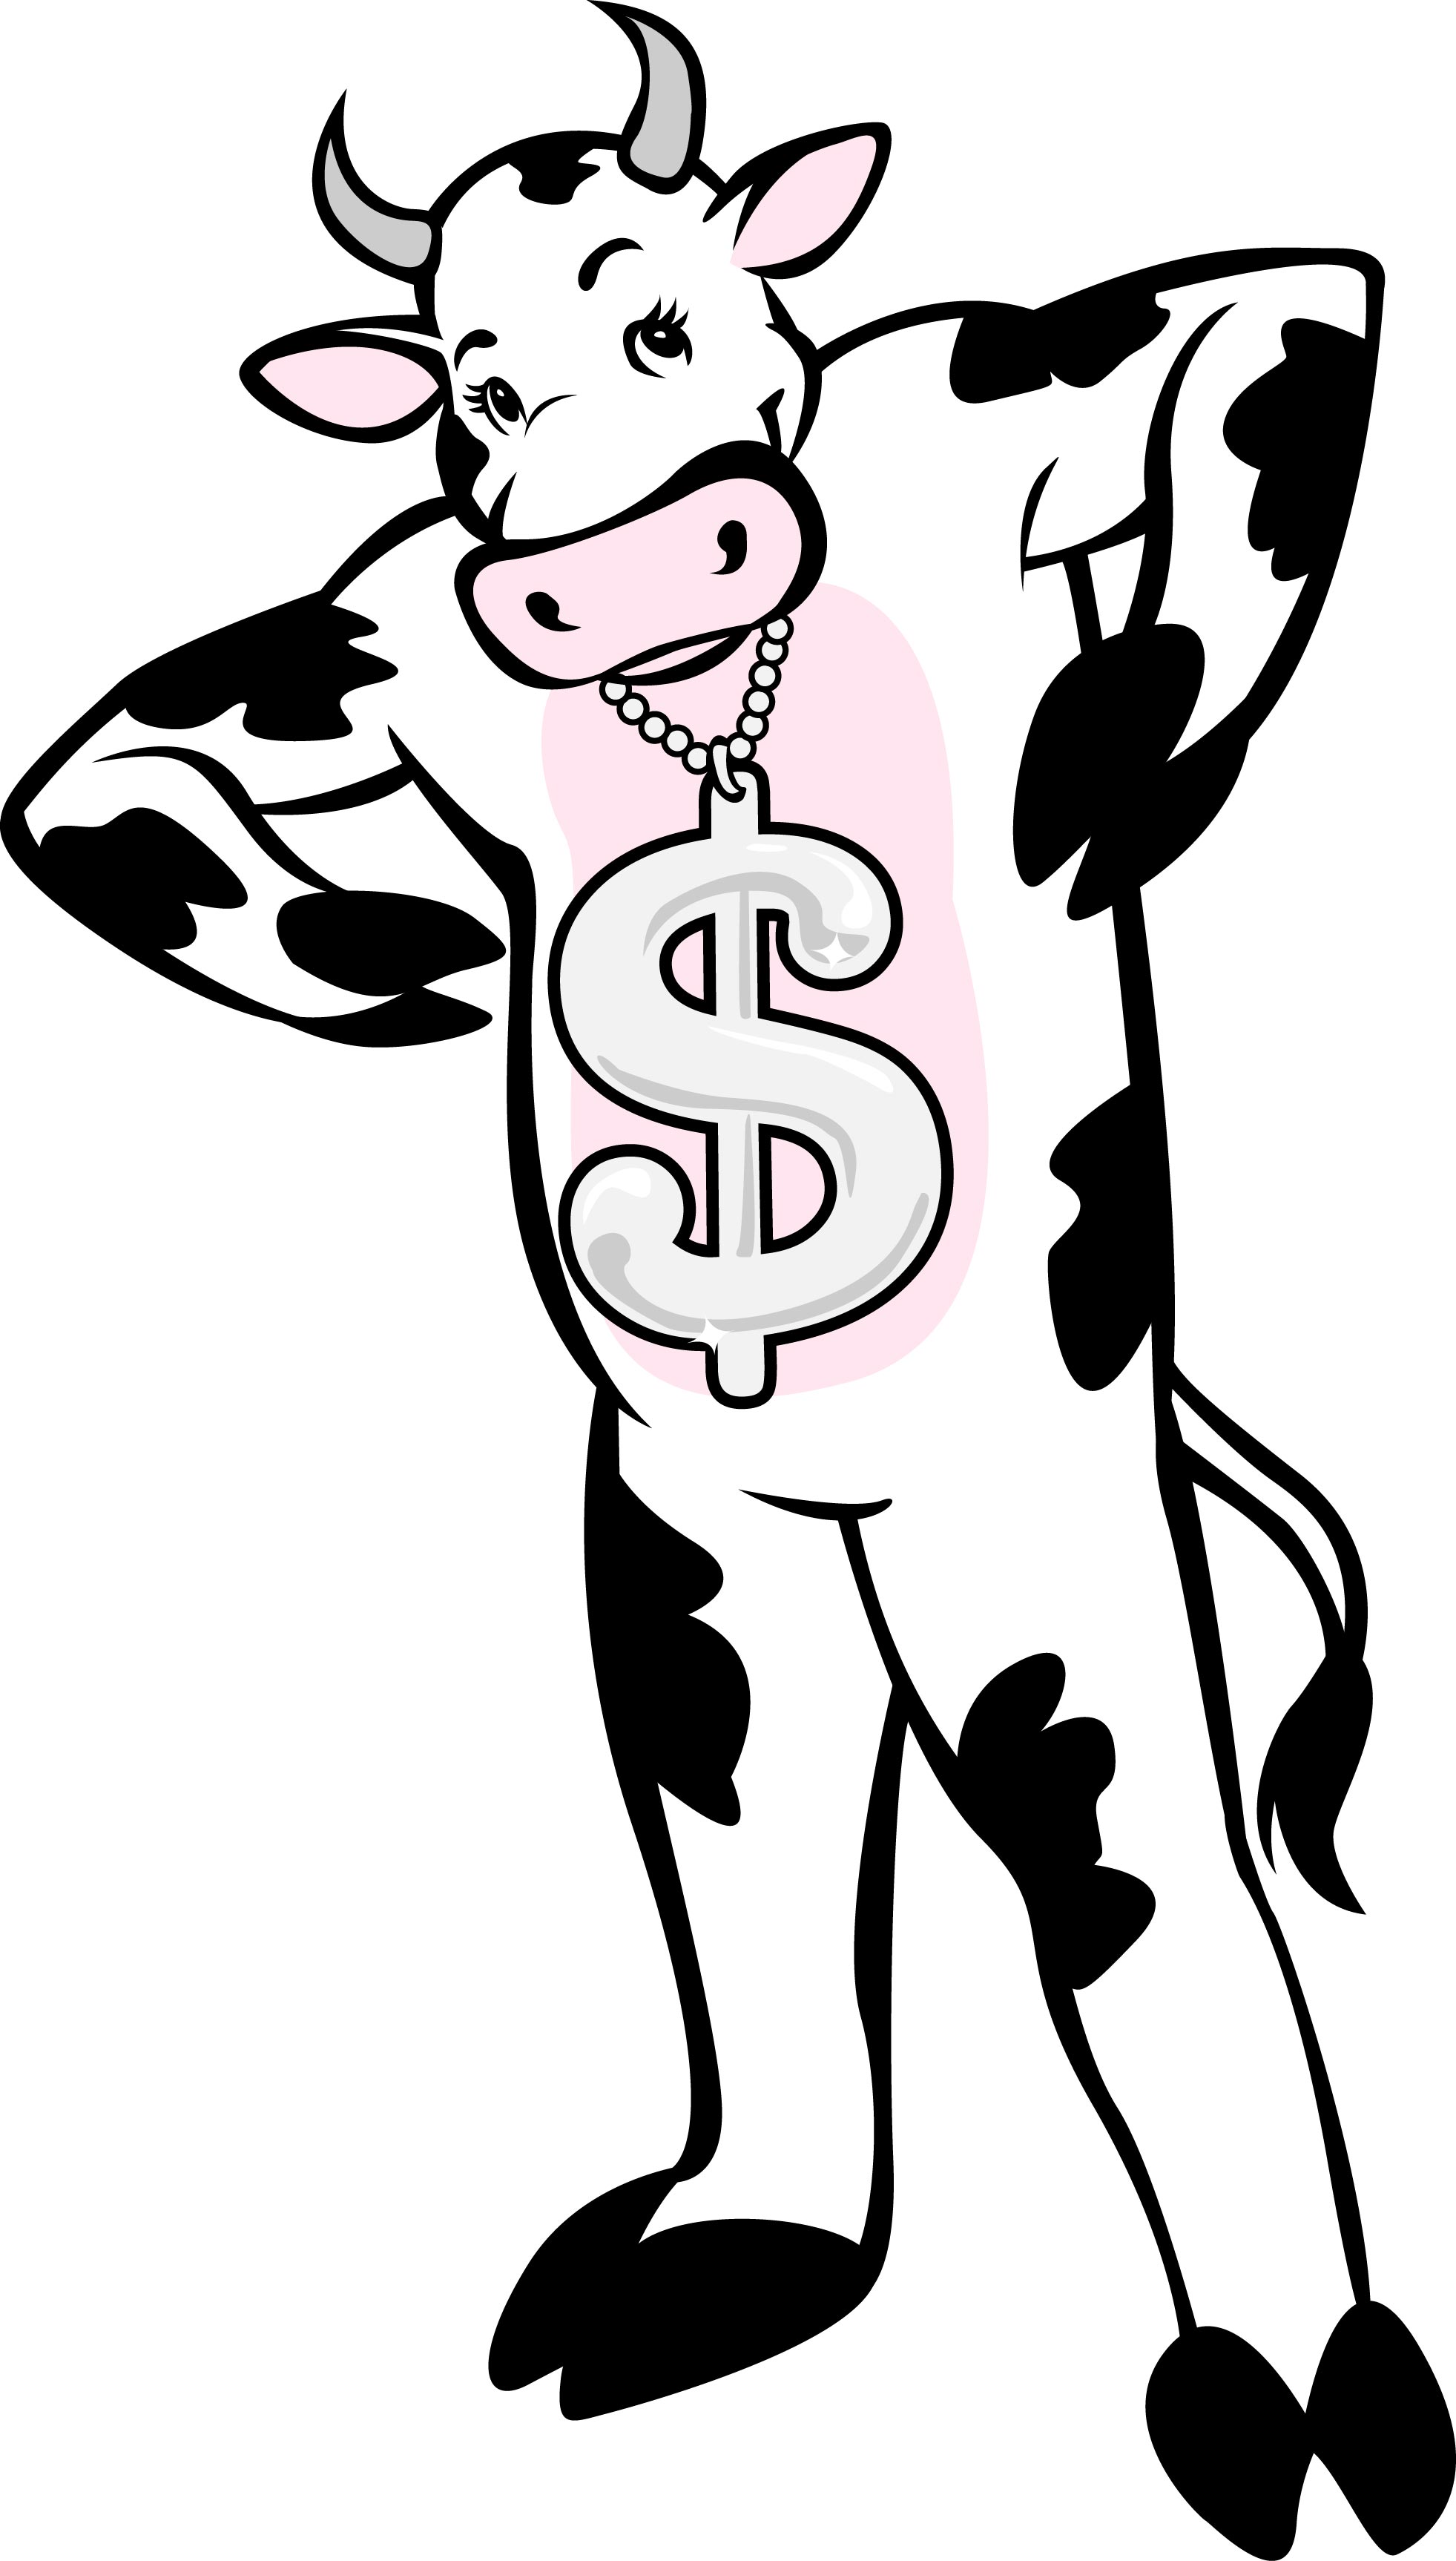 cash cow